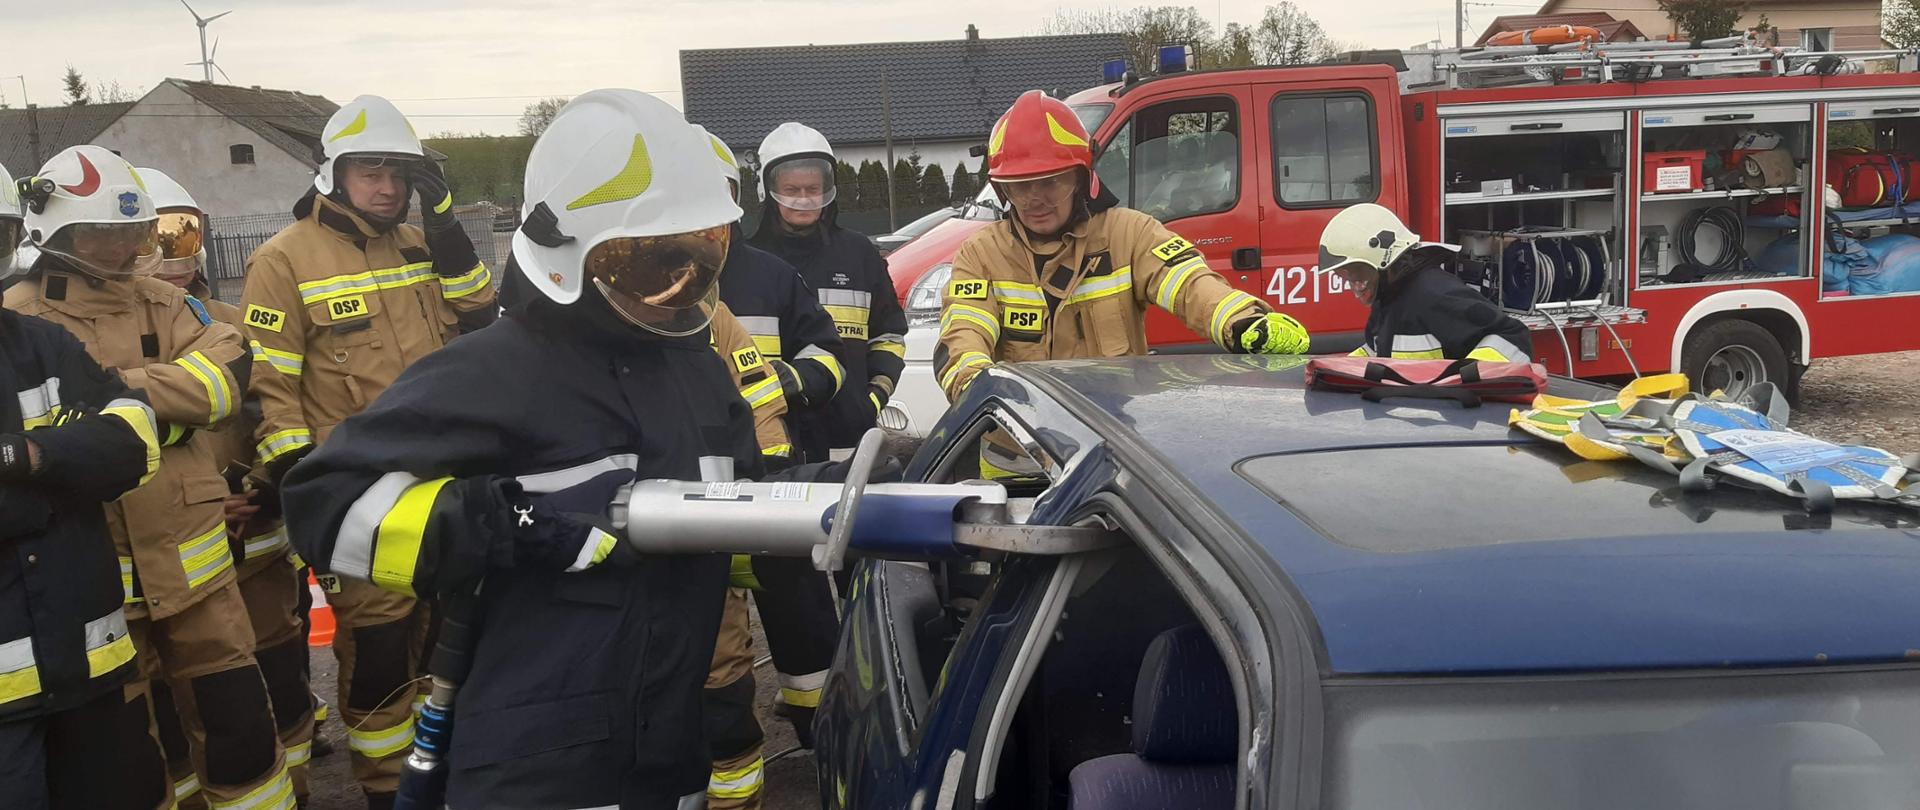 Na zdjęciu znajdują się strażacy OSP podczas zajęć z ratownictwa technicznego podczas kursu podstawowego dla strażaków ratowników OSP. Zdjęcie wykonano na terenie Centrum Motoryzacyjnego w Trzebiełuchu.